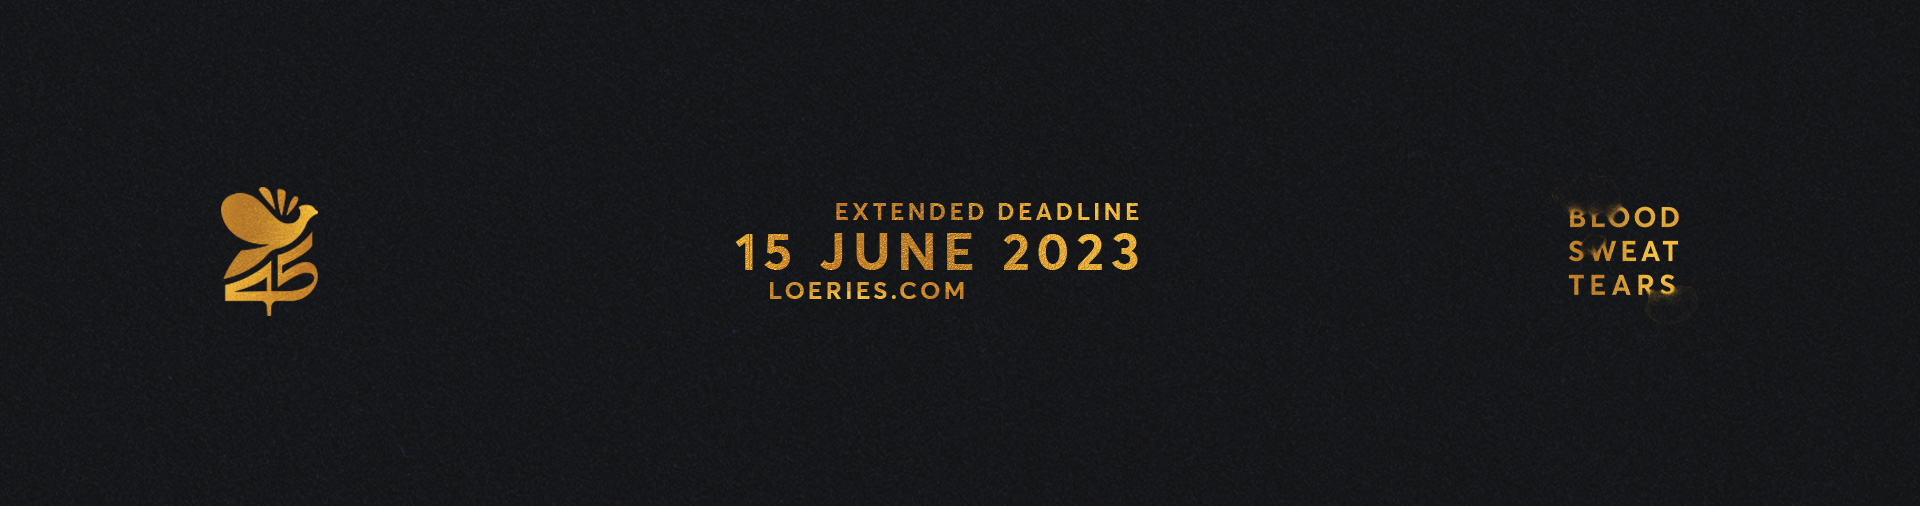 Loeries extended deadline 15 June 2023